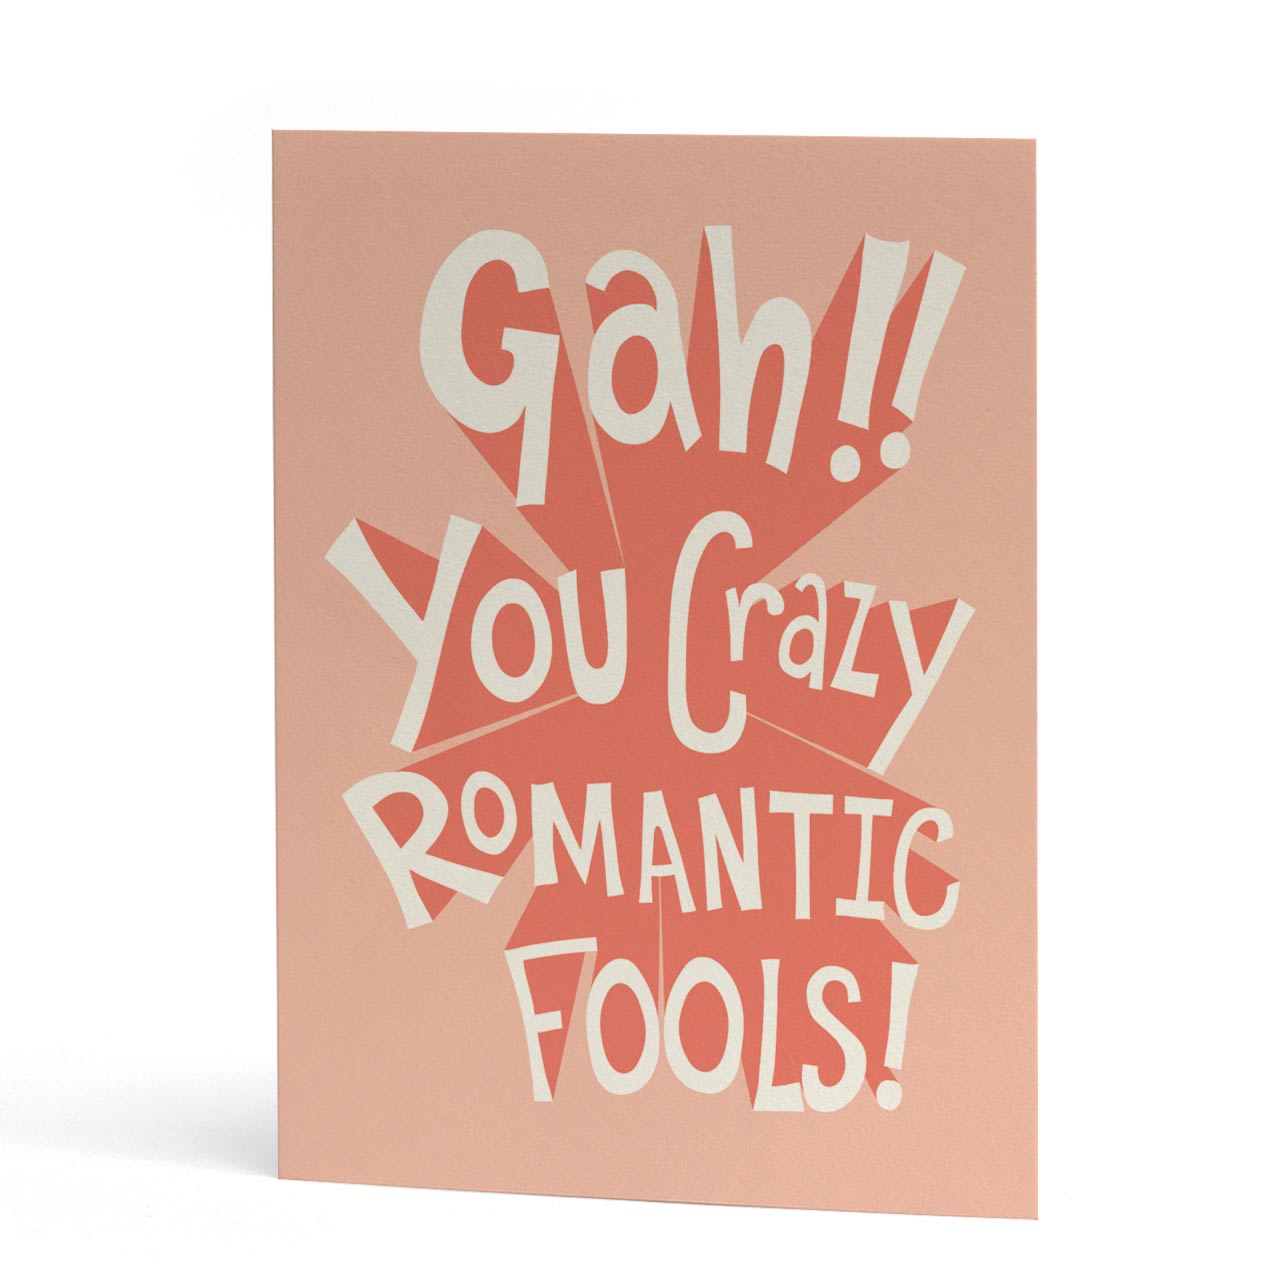 Gah, You Crazy Romantic Fools Card